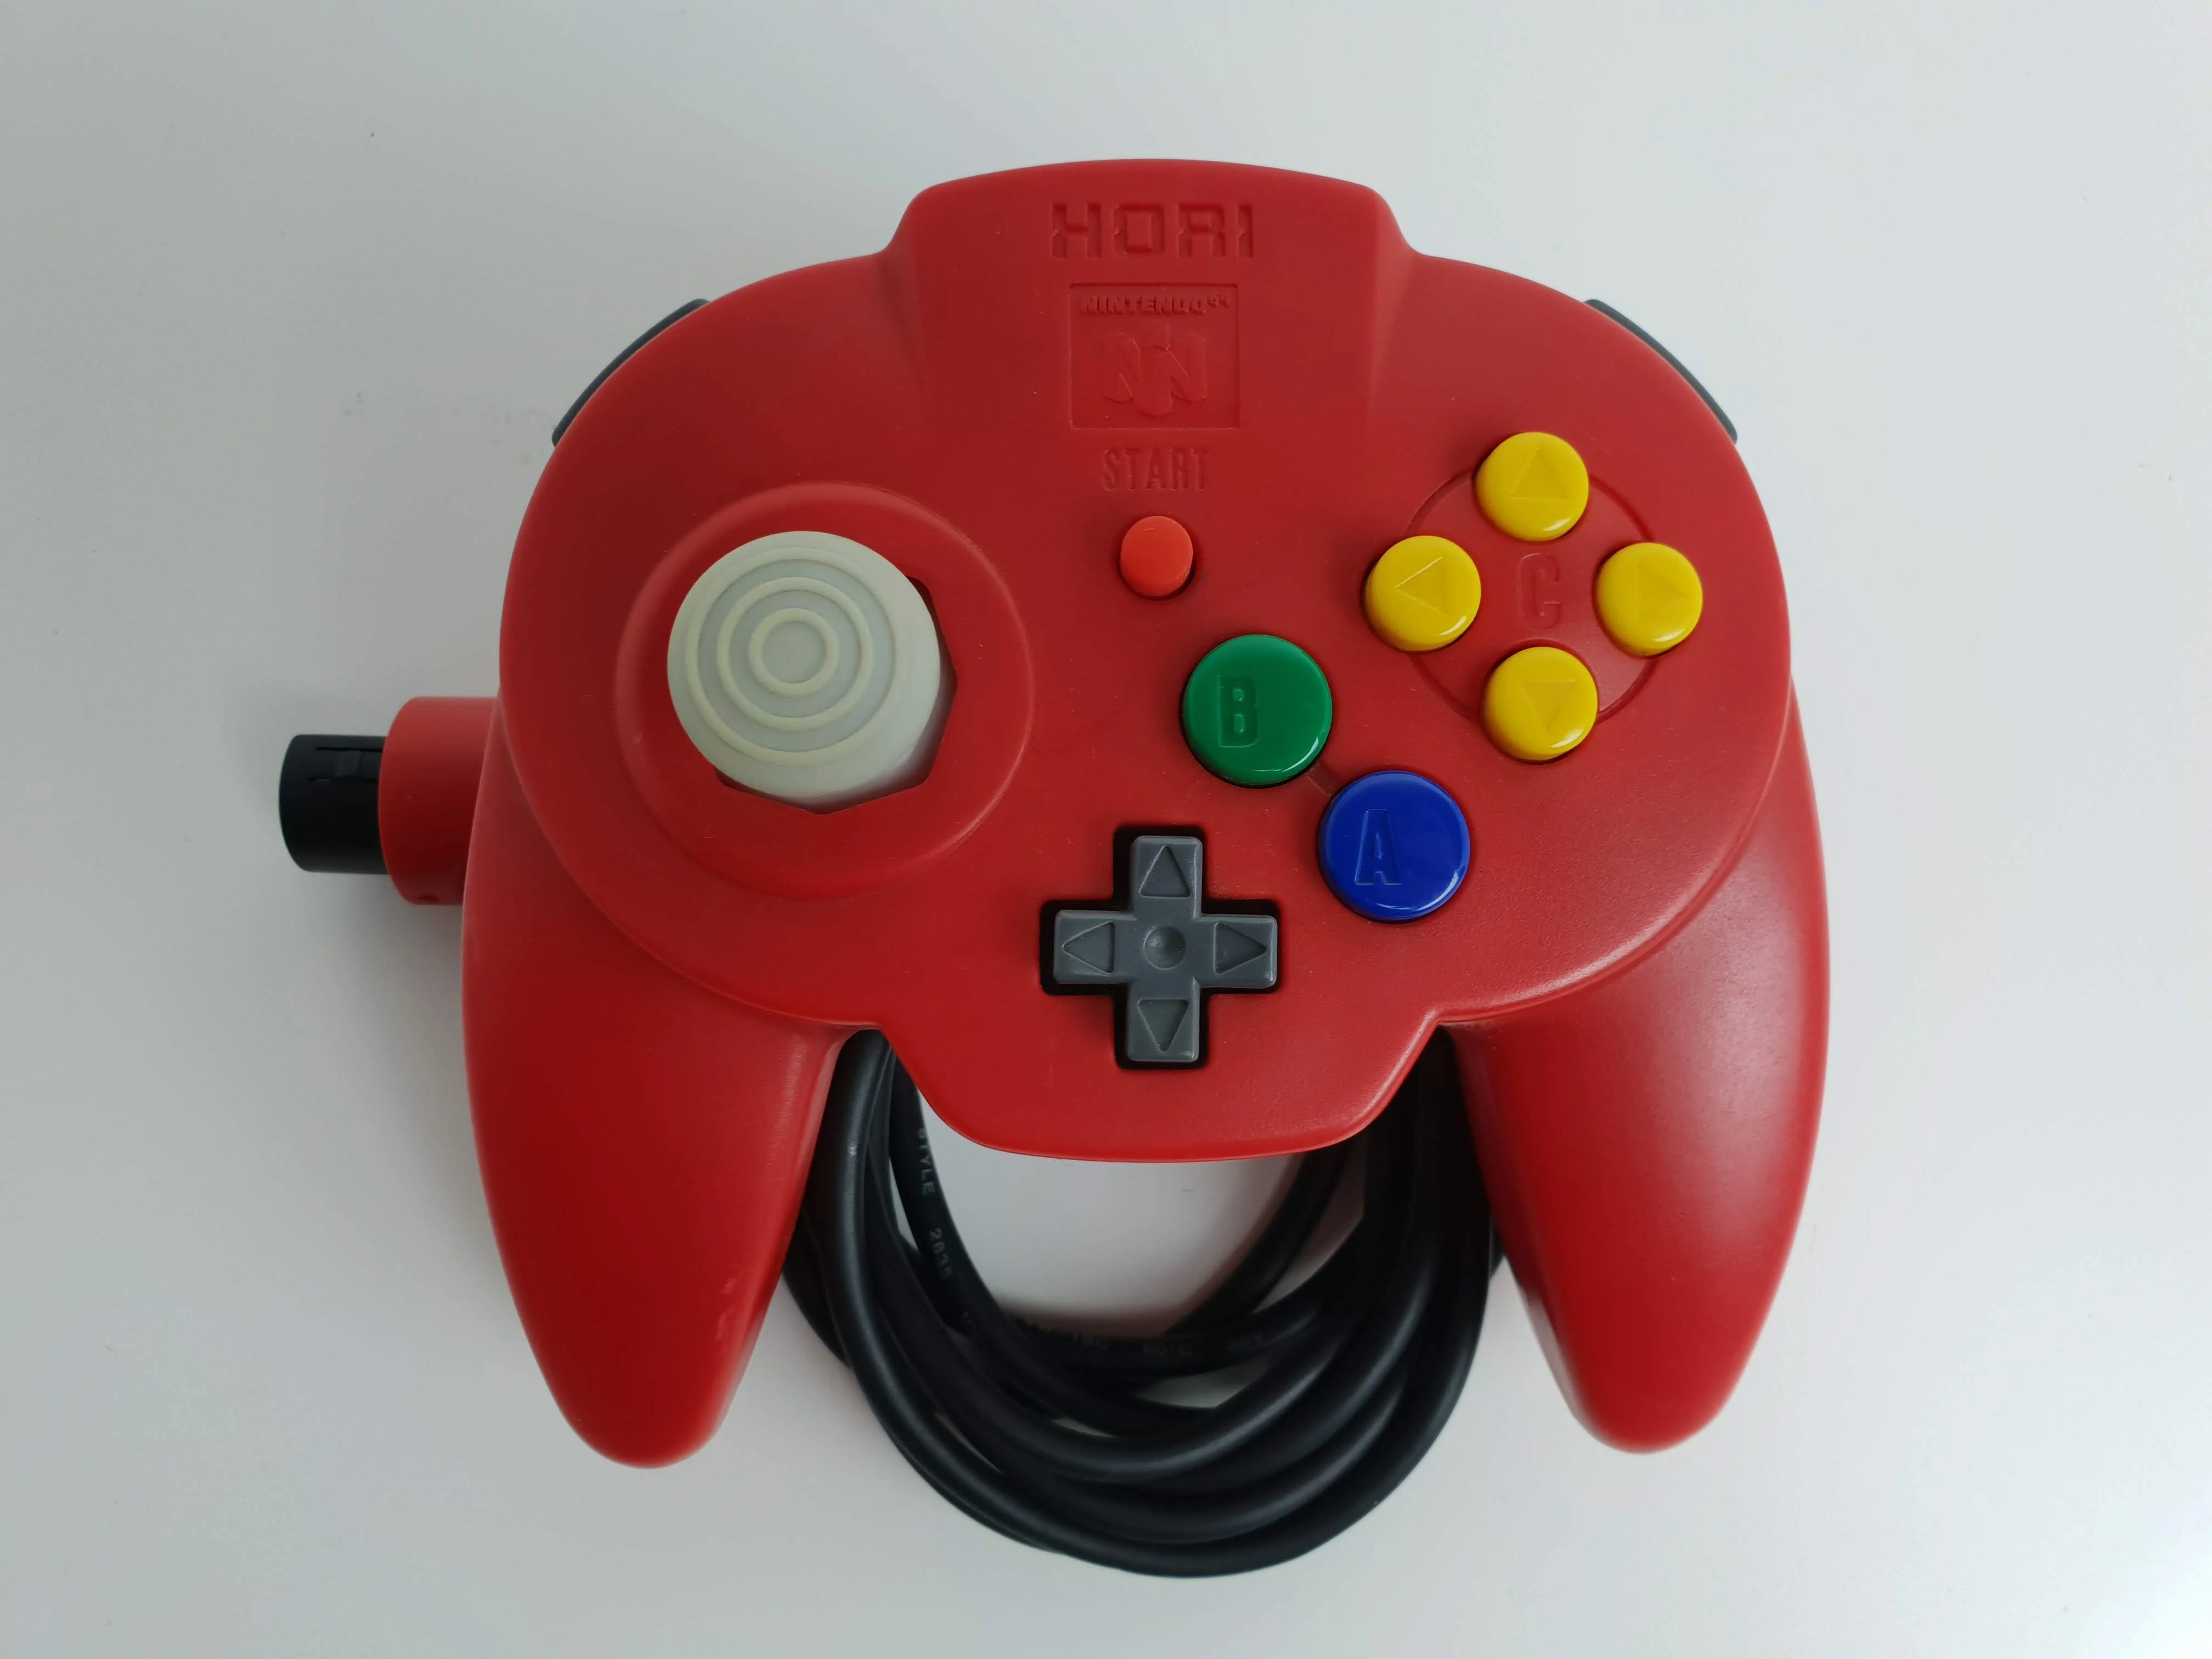  Hori Nintendo 64 Red Controller